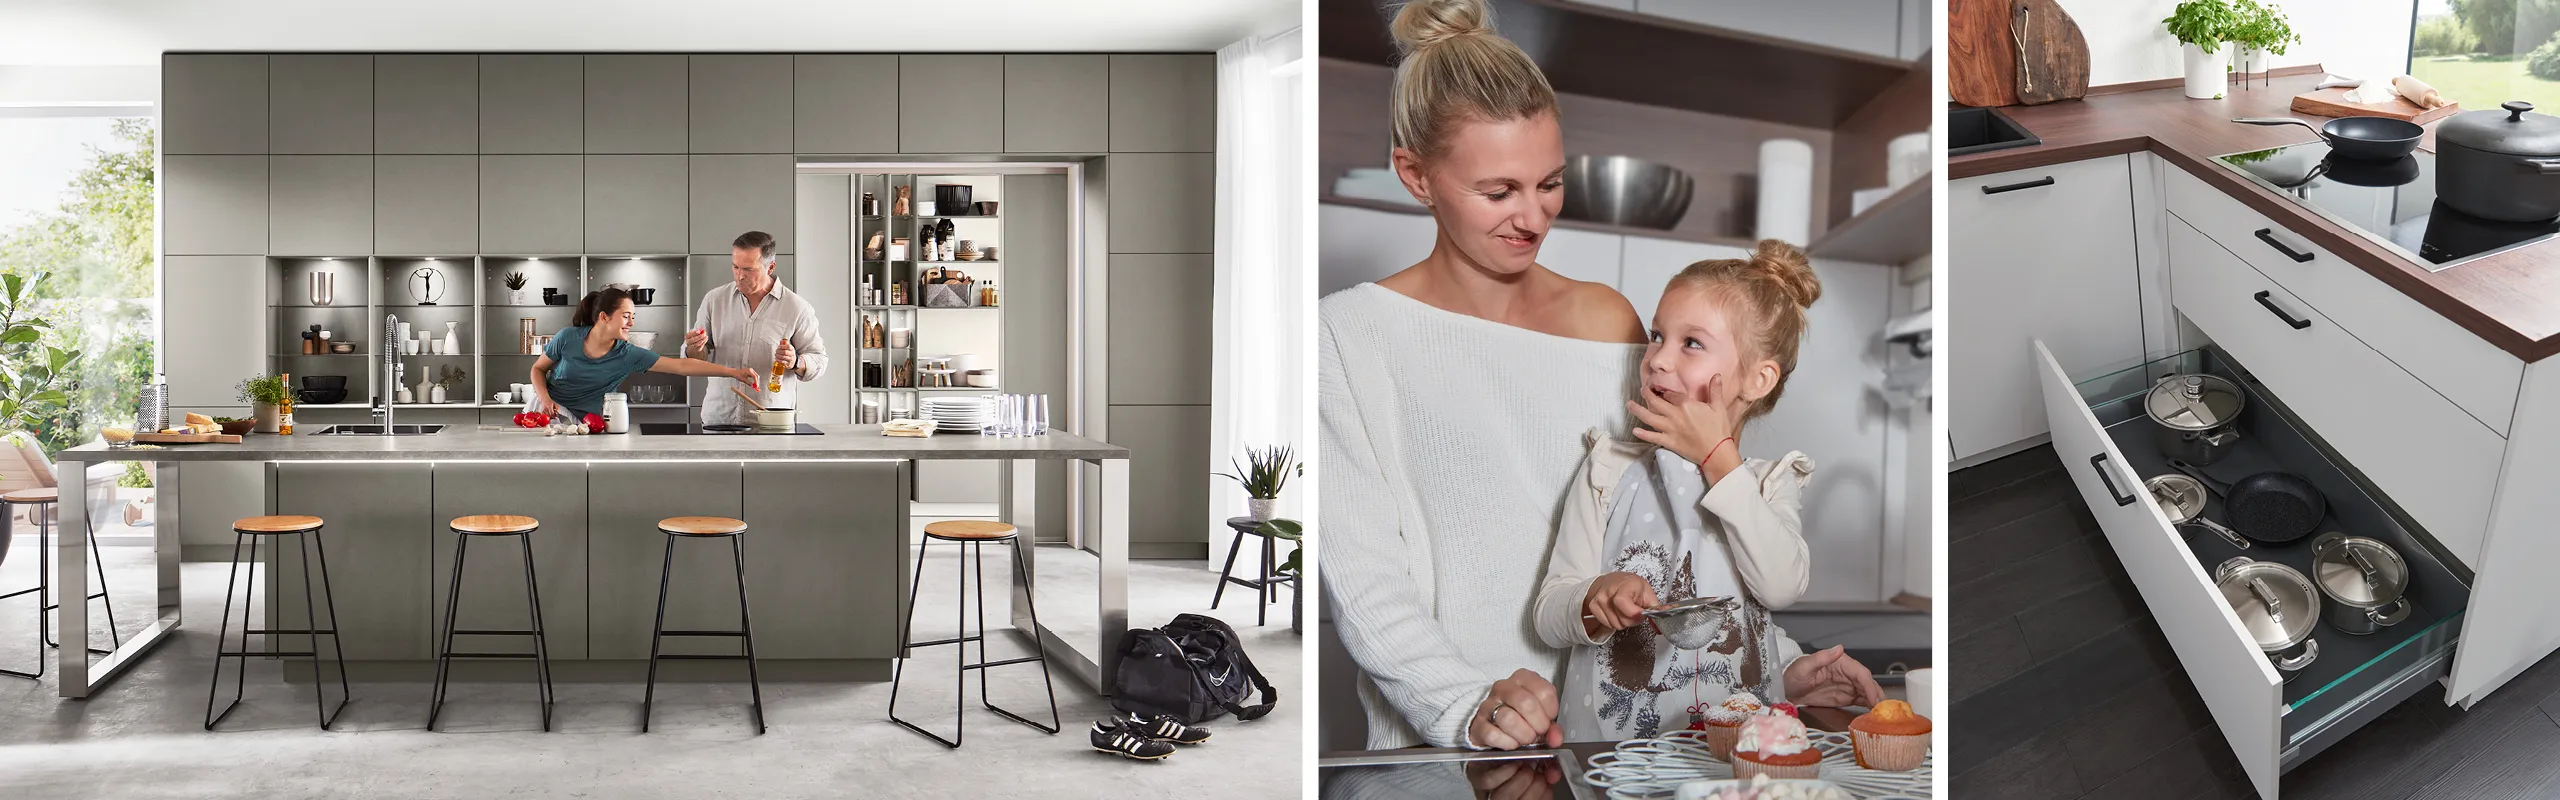 Paar in moderner grauer Inselküche mit Barhockern, Frau mit Kleinkind in Küche und Küchenschublade mit Töpfen